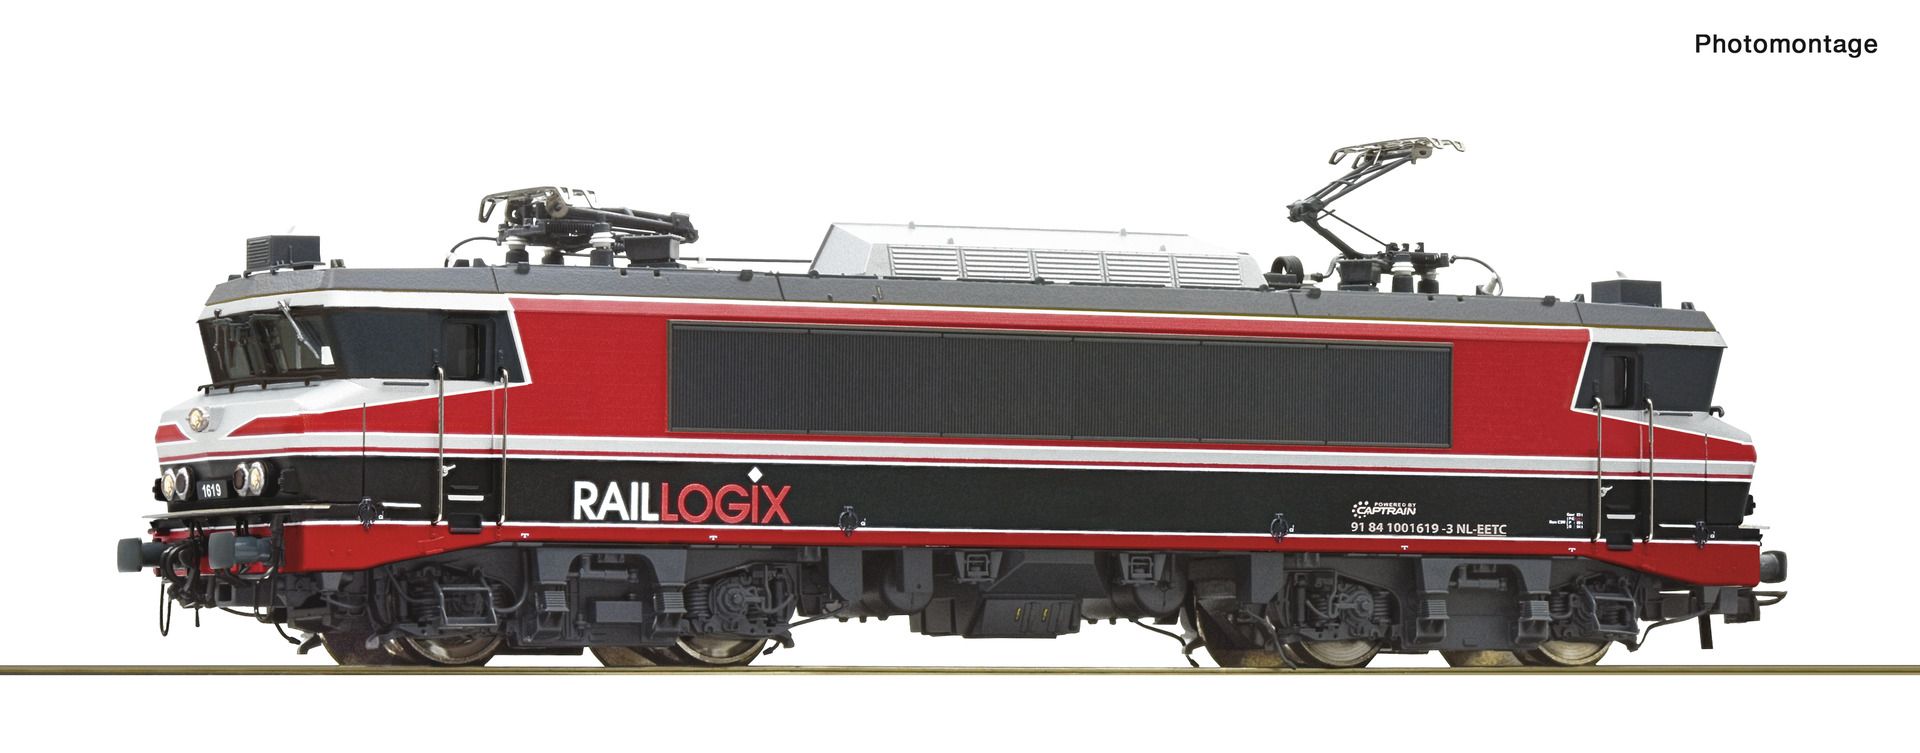 Roco 7520068 - E-Lok 1619, Raillogix, Ep.VI, AC-Sound